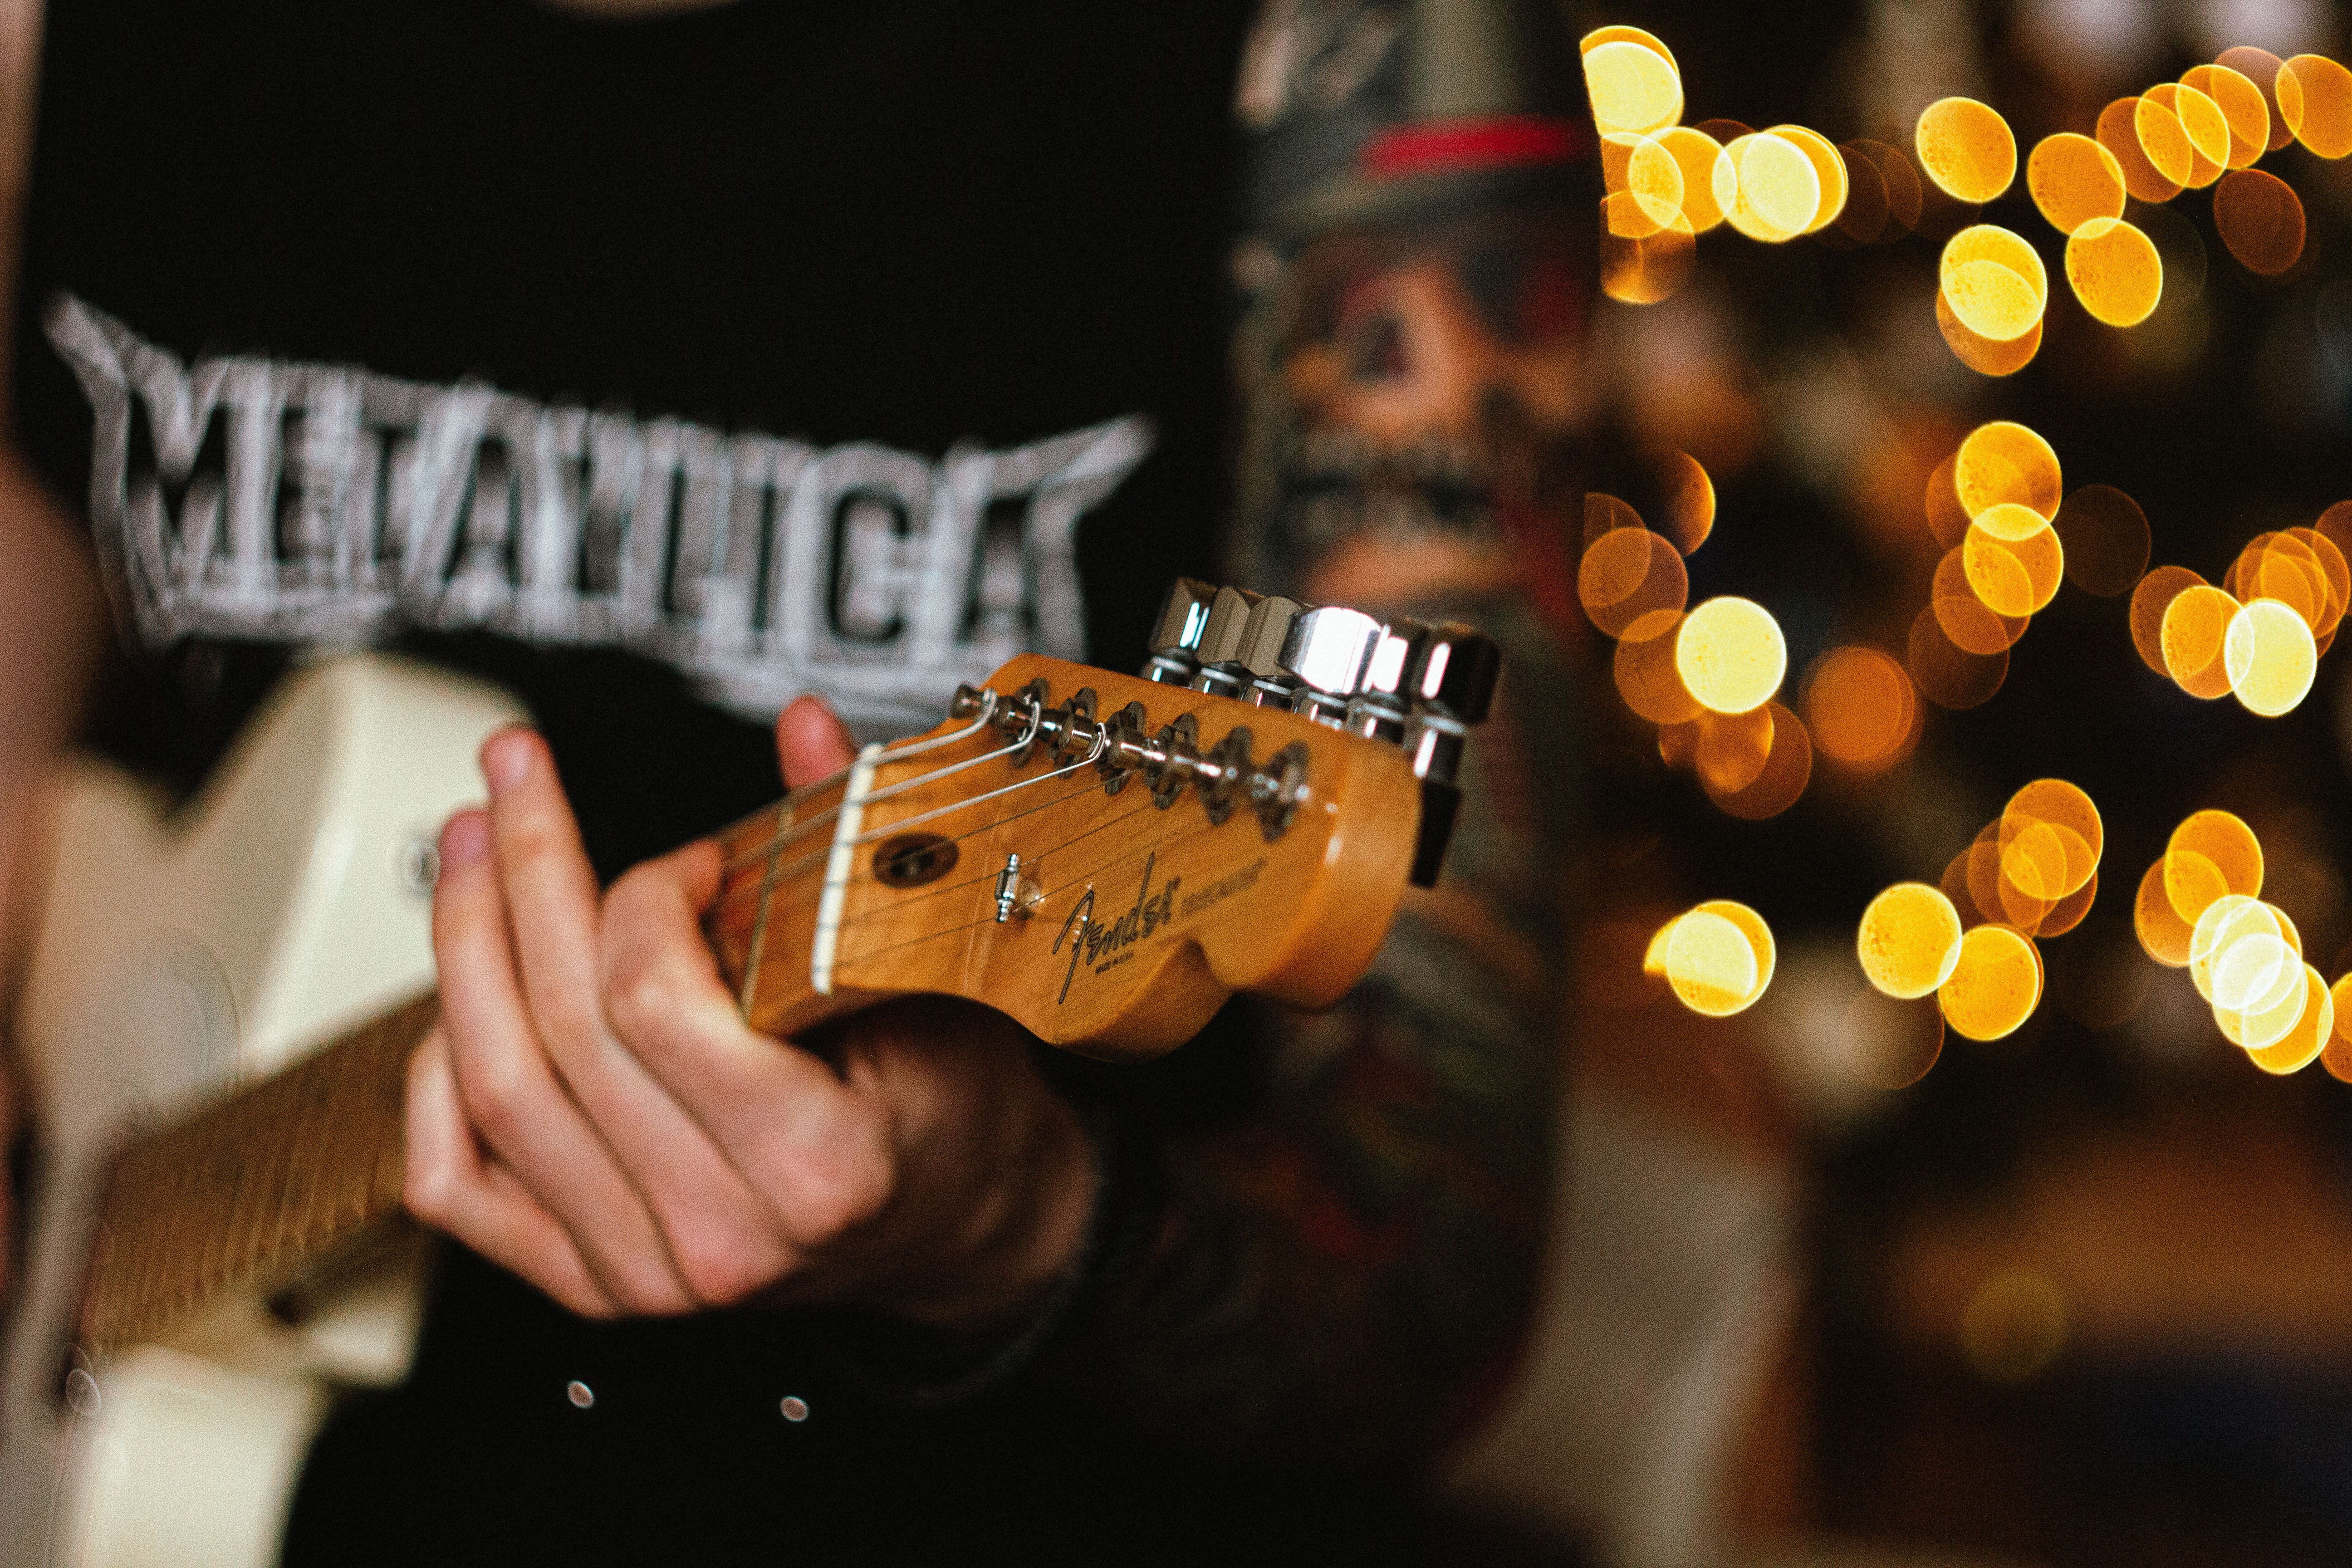 Imagem de um homem tocando sua guitarra e vestido com uma blusa com o nome “Metallica” impresso na frente.